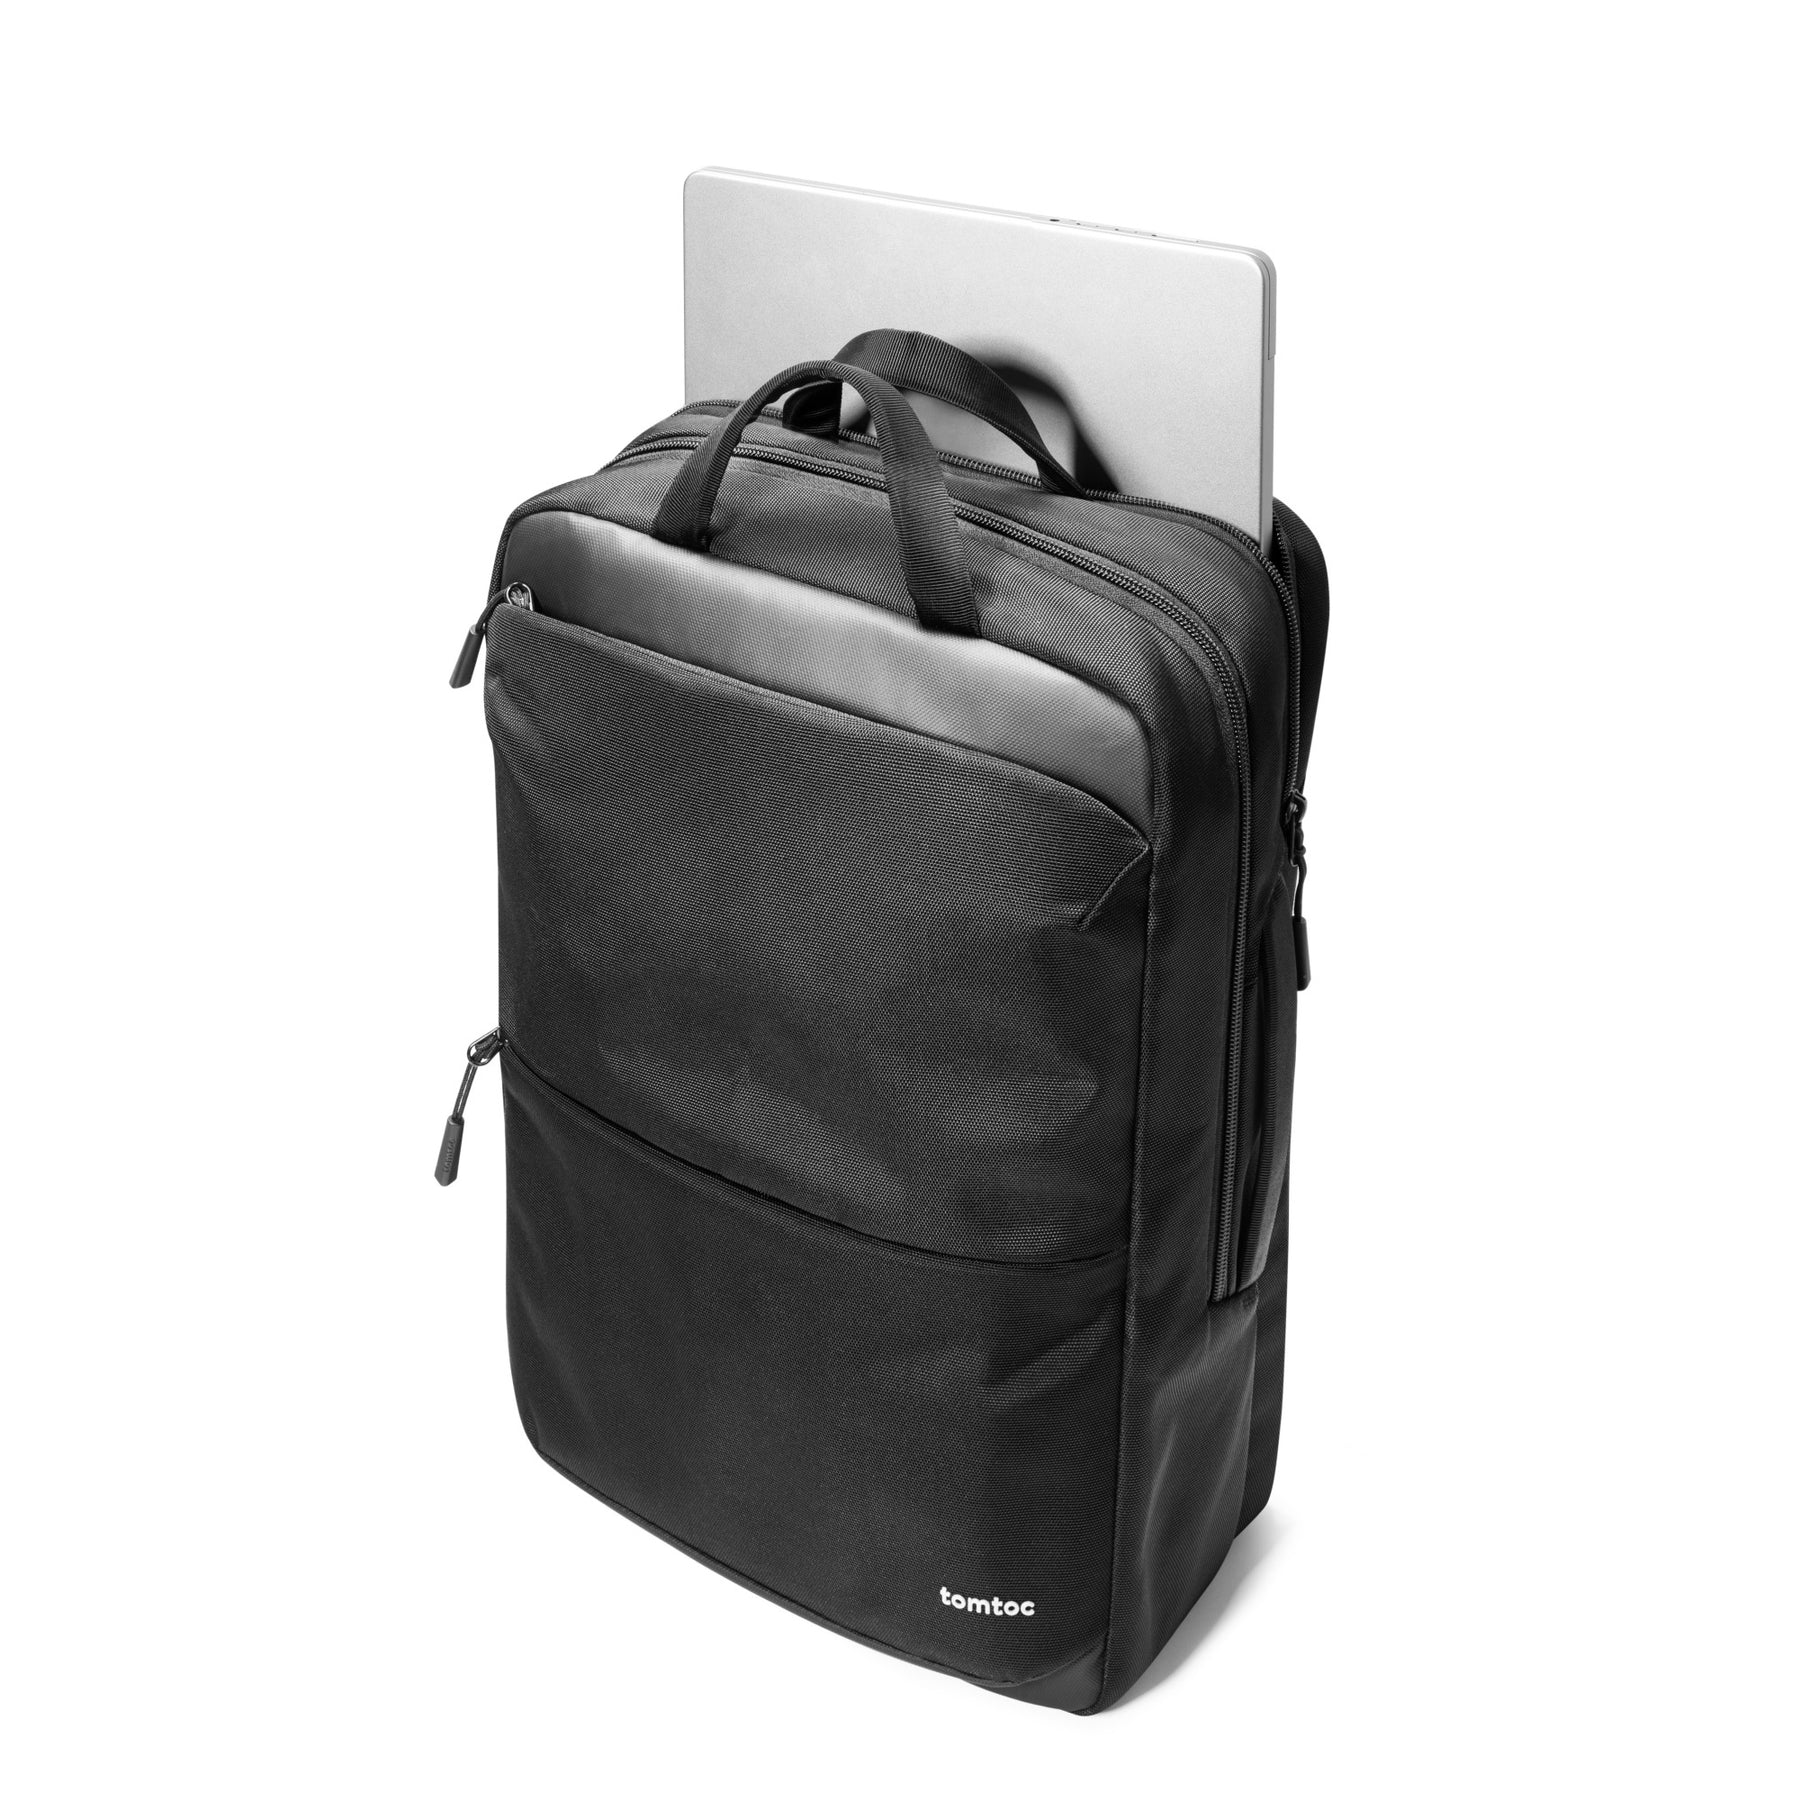 Navigator-T71 Laptop Backpack 18L